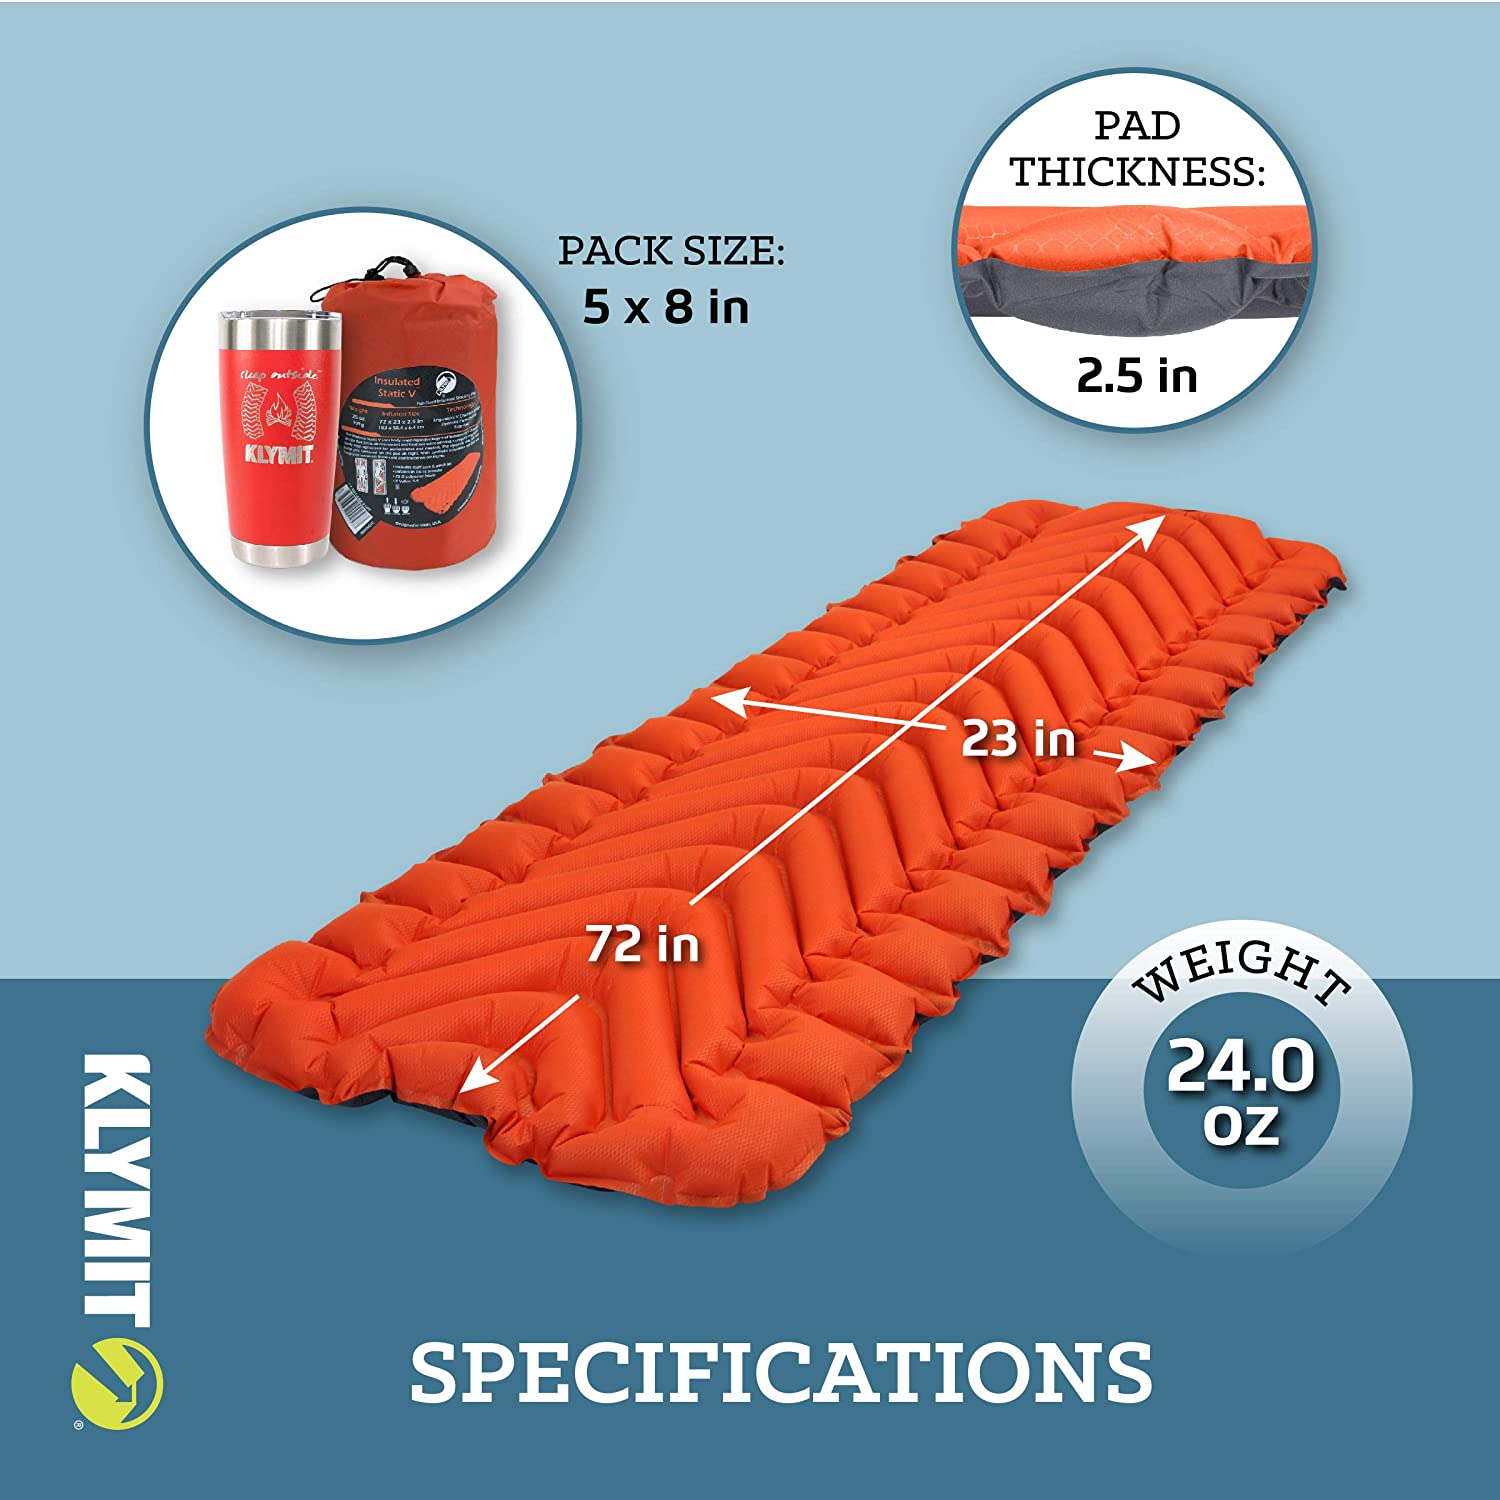 Надувной коврик KLYMIT Insulated Static V оранжевый с доставкой по России и в Казахстан | BreadyФото 0